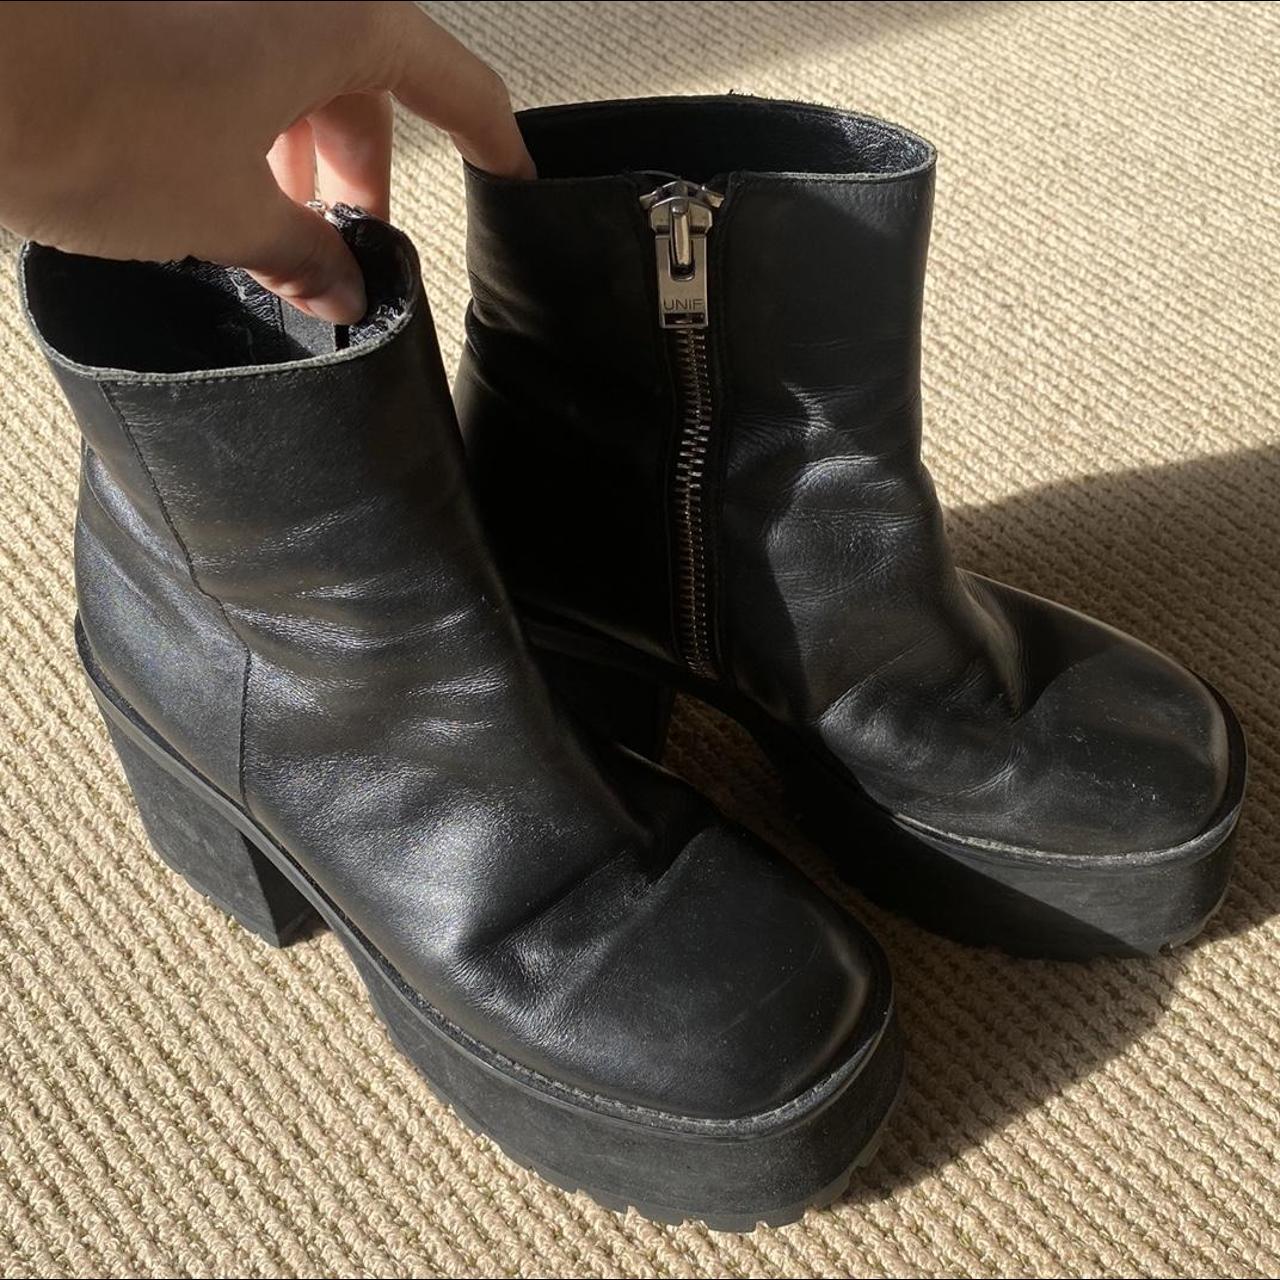 UNIF Bonnie boots, black leather platforms. So... - Depop